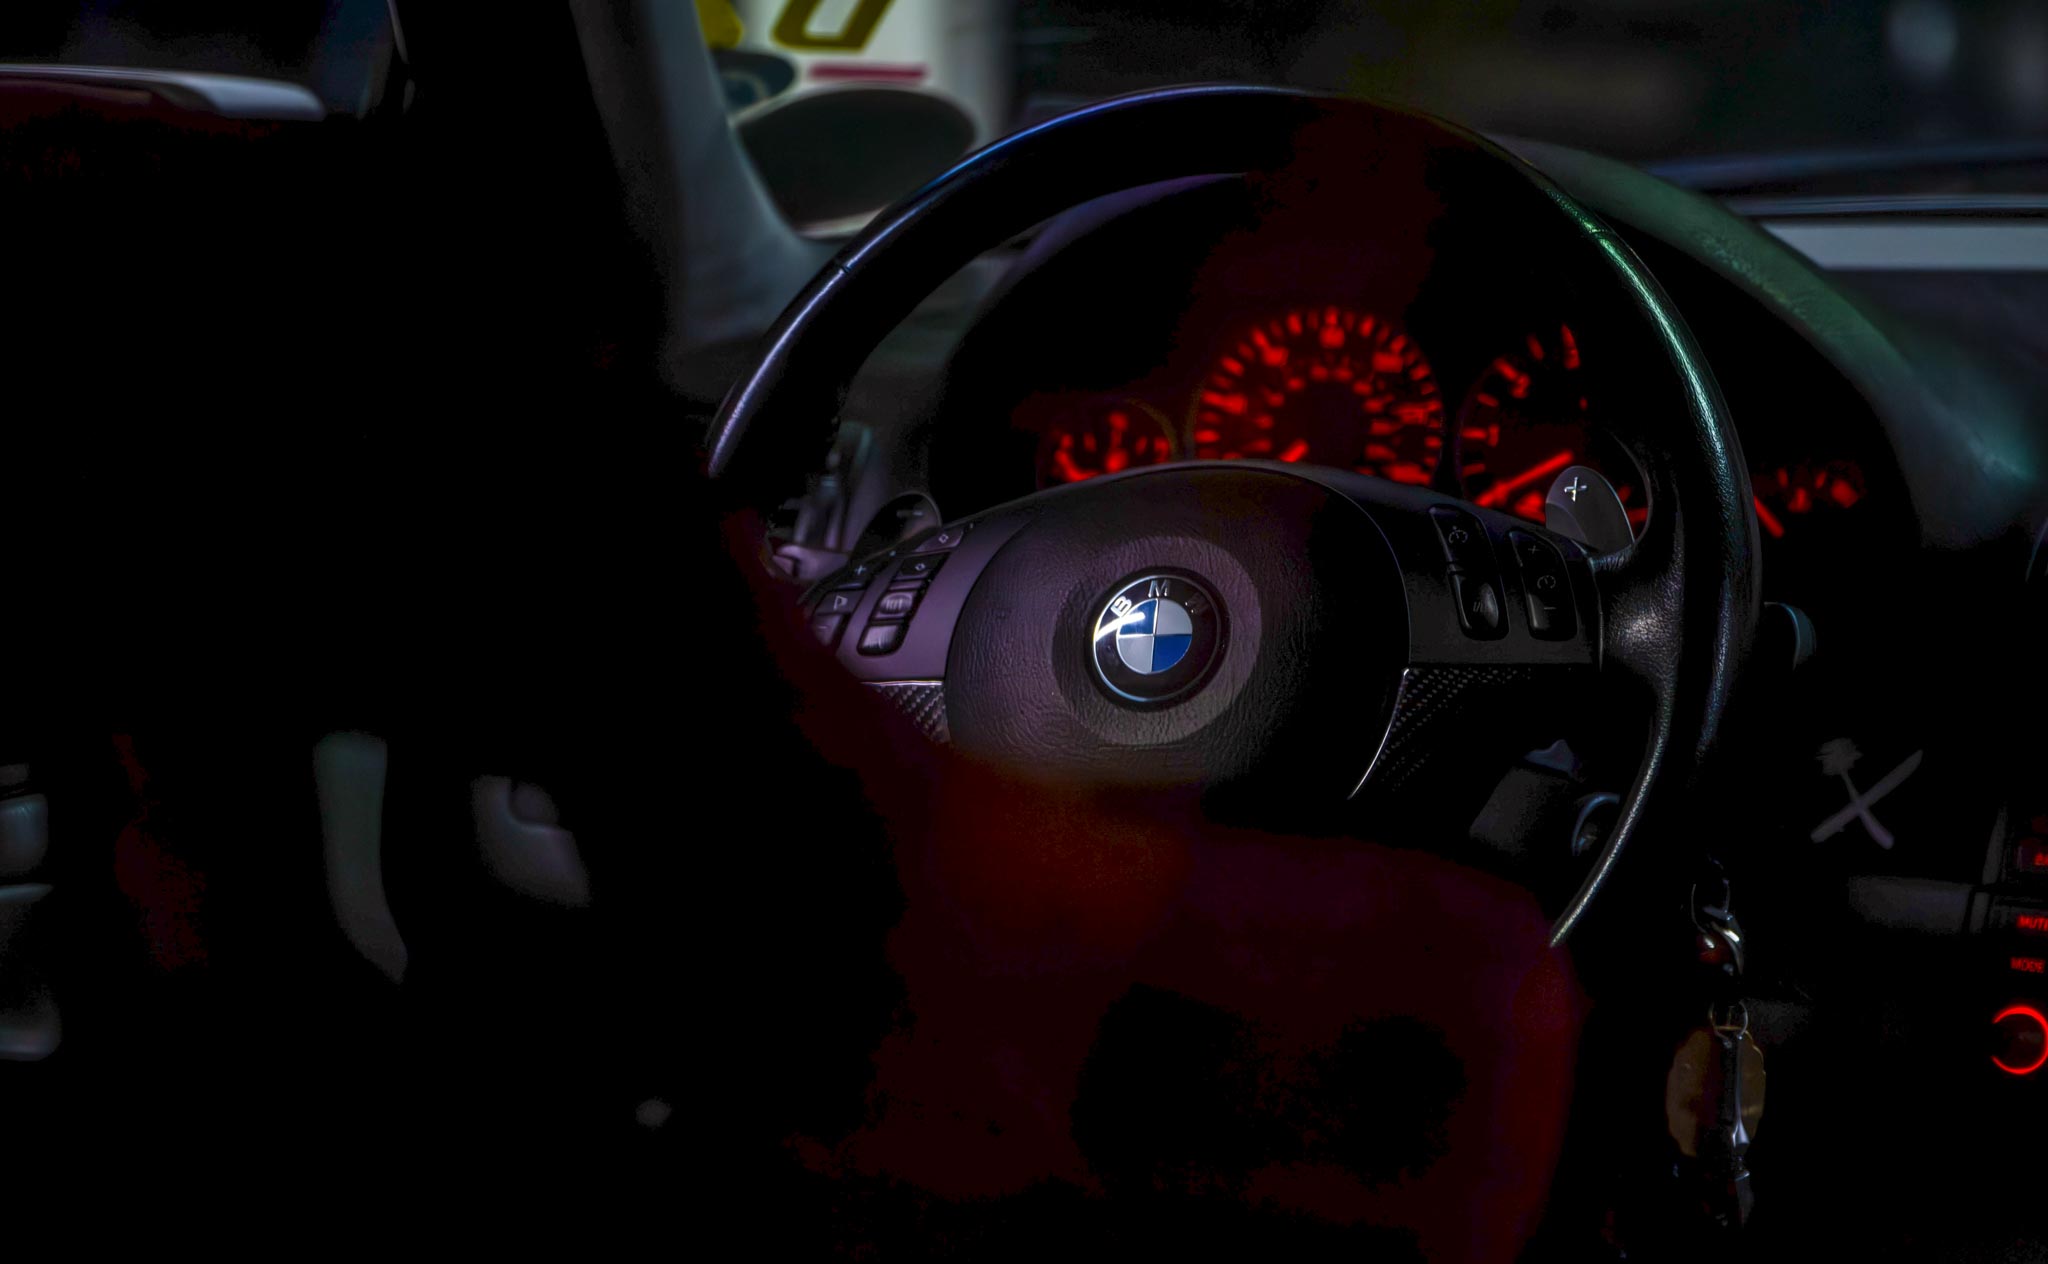 BMW M3 steering wheel